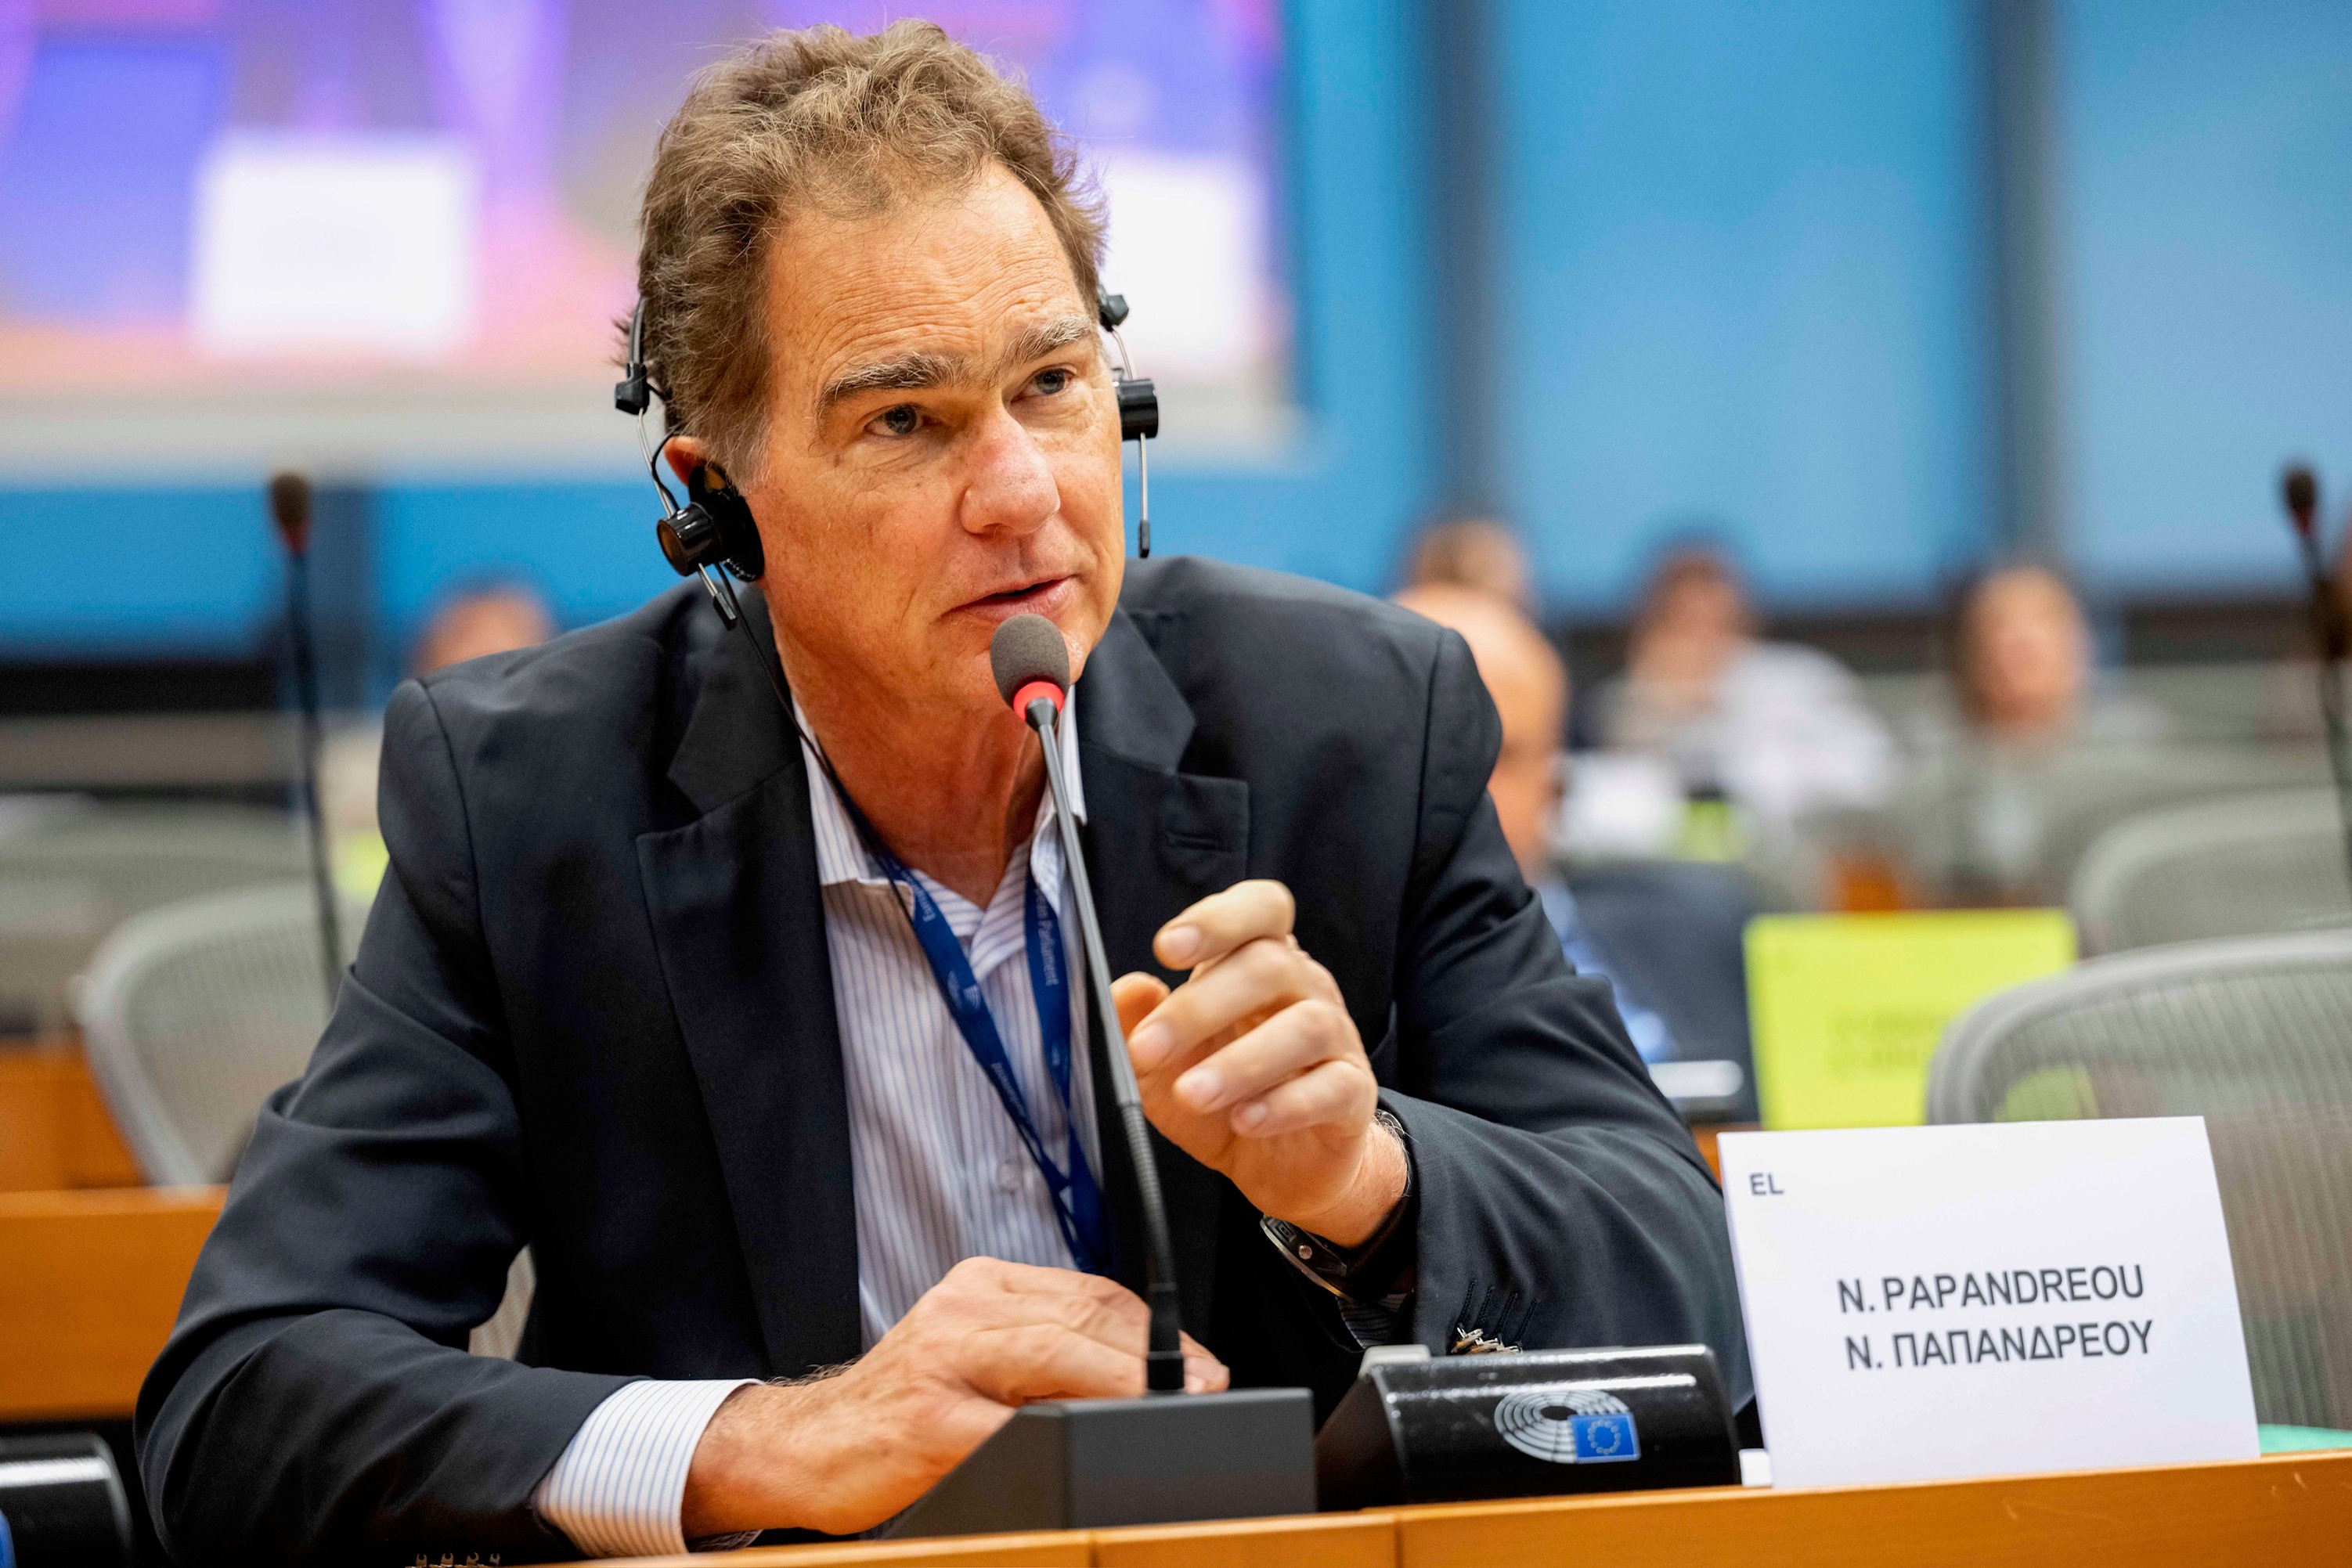 Νίκος Παπανδρέου: Τέλος σε καταχρηστικές αγωγές κατά δημοσιογράφων και ακτιβιστών στην Ευρώπη